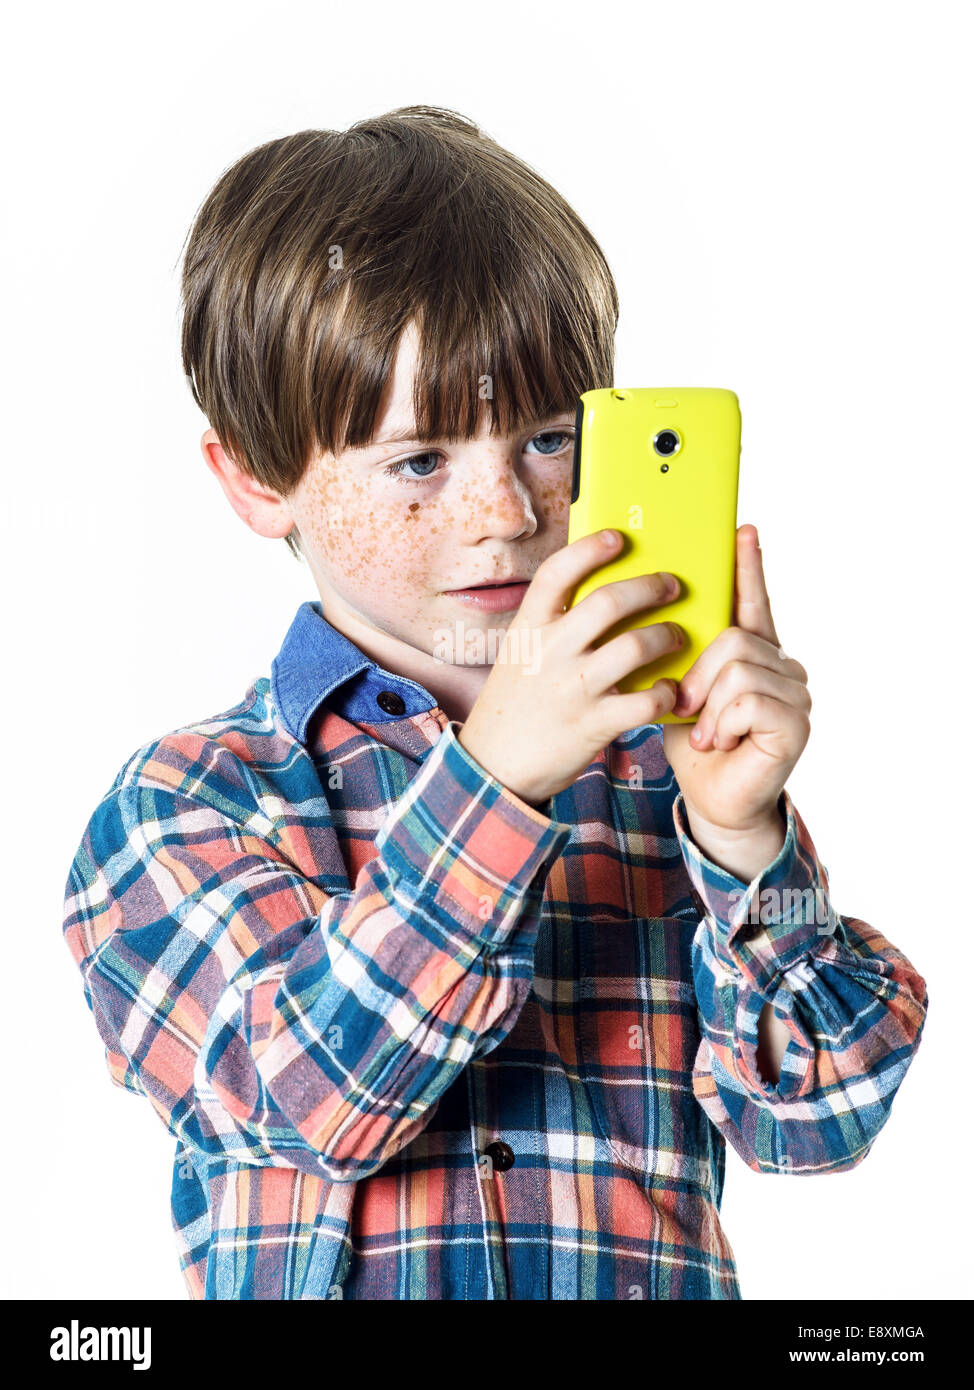 Rothaarige lustige junge mit gelben Handy, Vorschüler Stockfoto